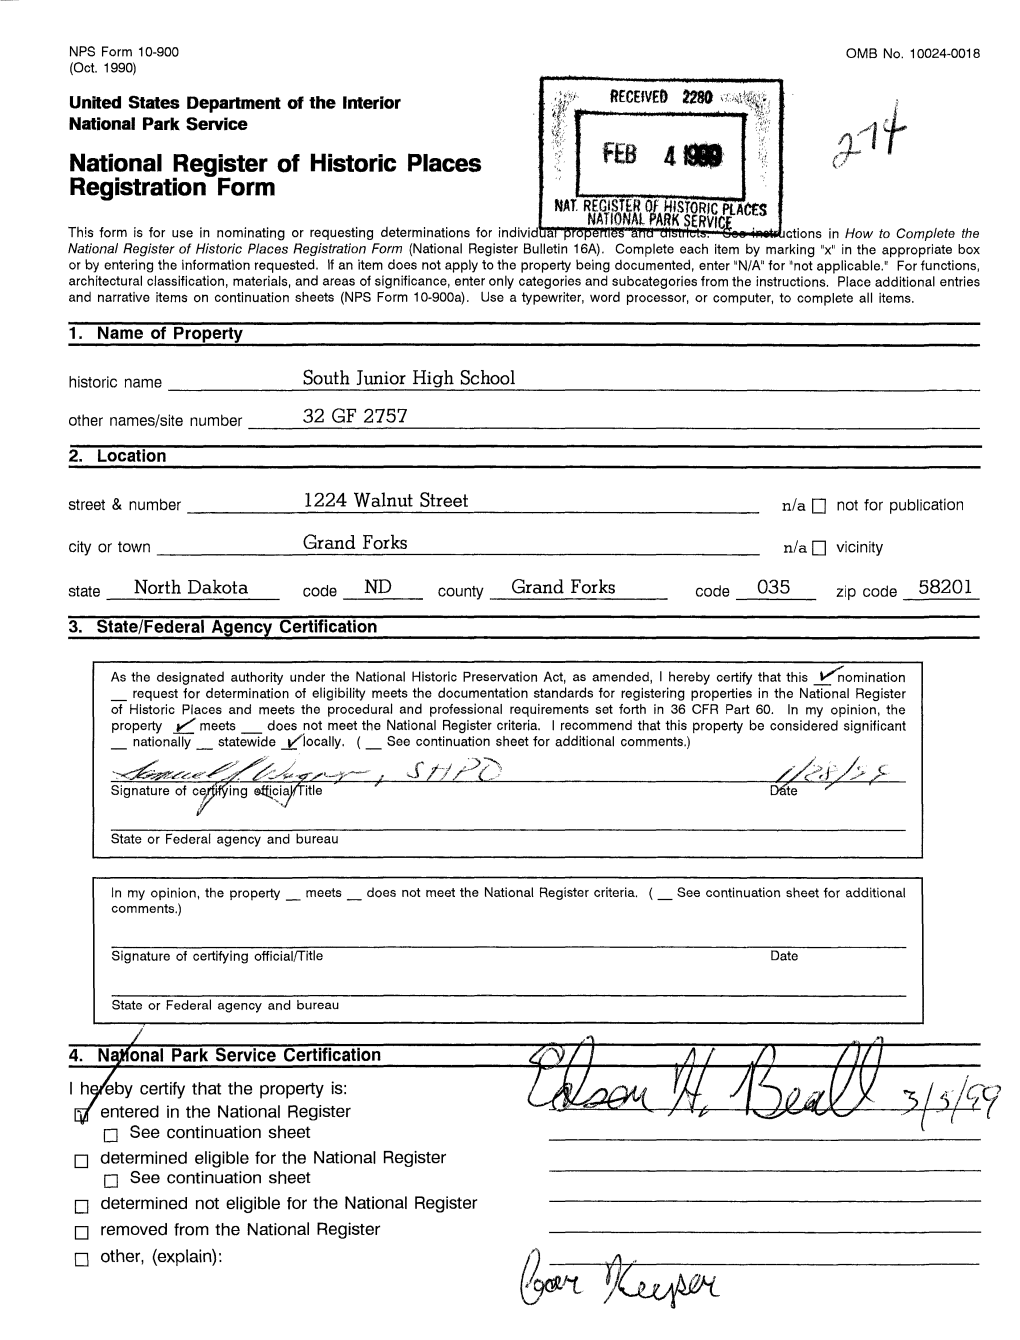 National Register of Historic Places Registration Form 4